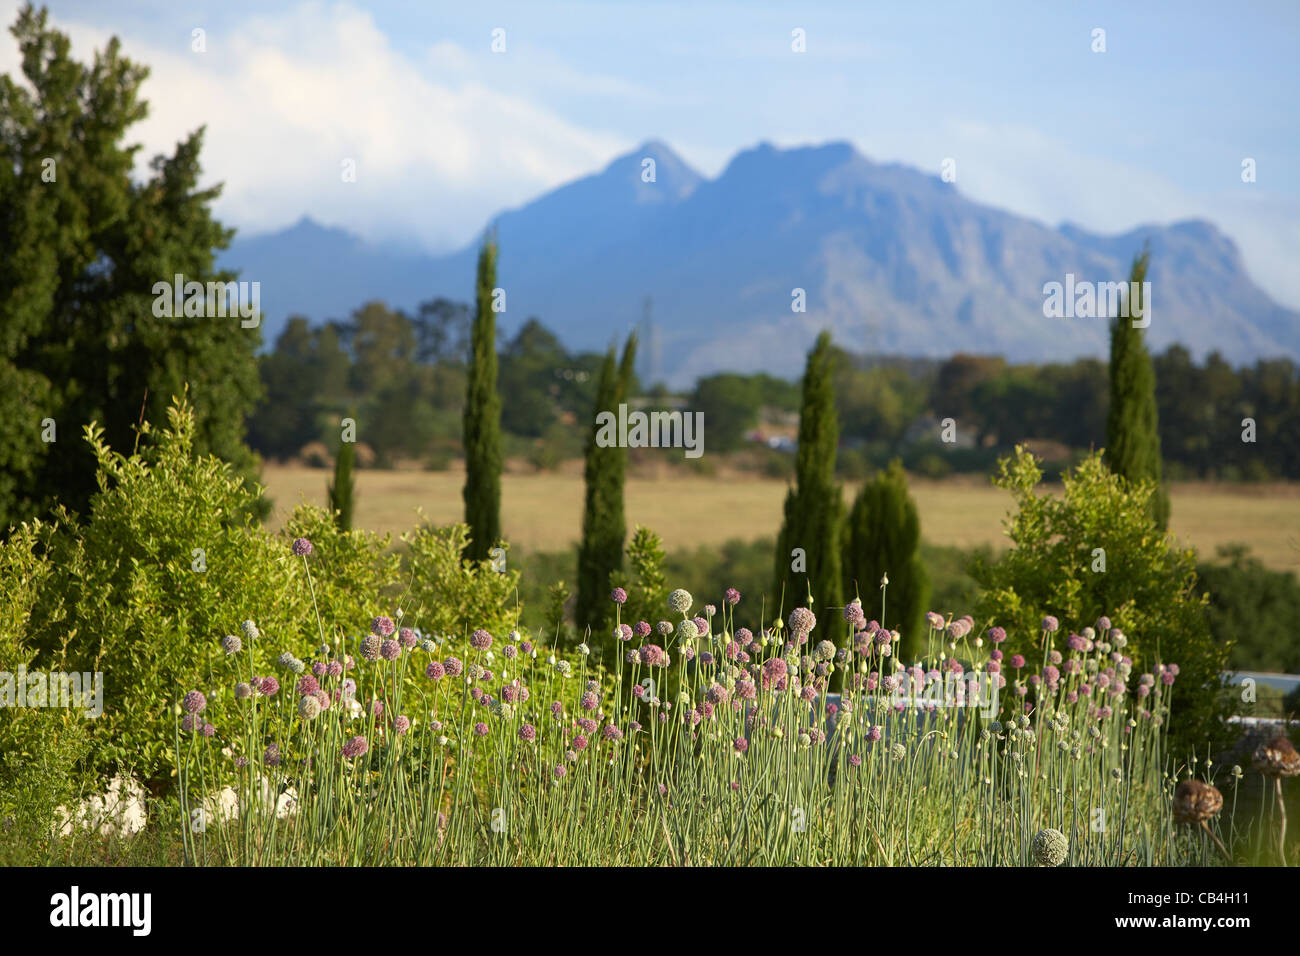 Garden and mountain near Stellenbosch, South Africa Stock Photo